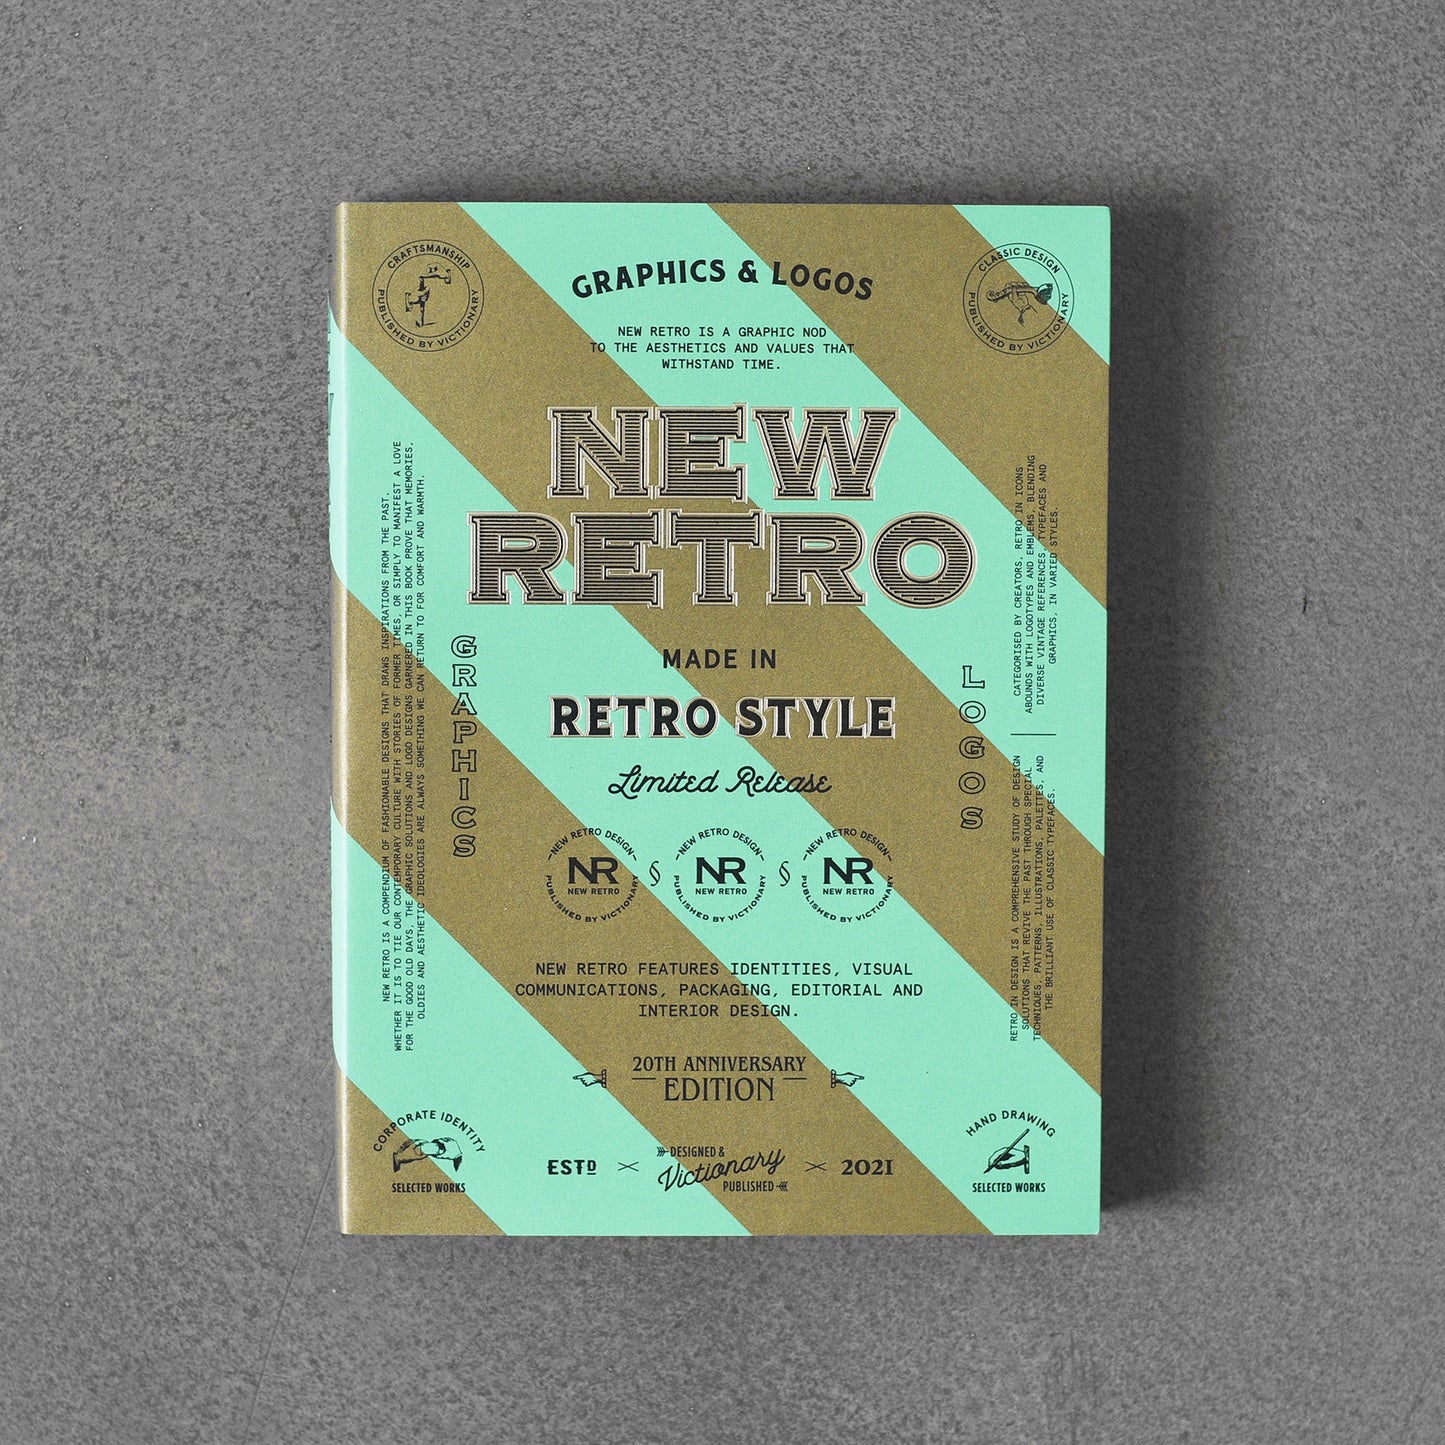 NEW RETRO: 20th Anniversary Edition : Graphics & Logos in Retro Style